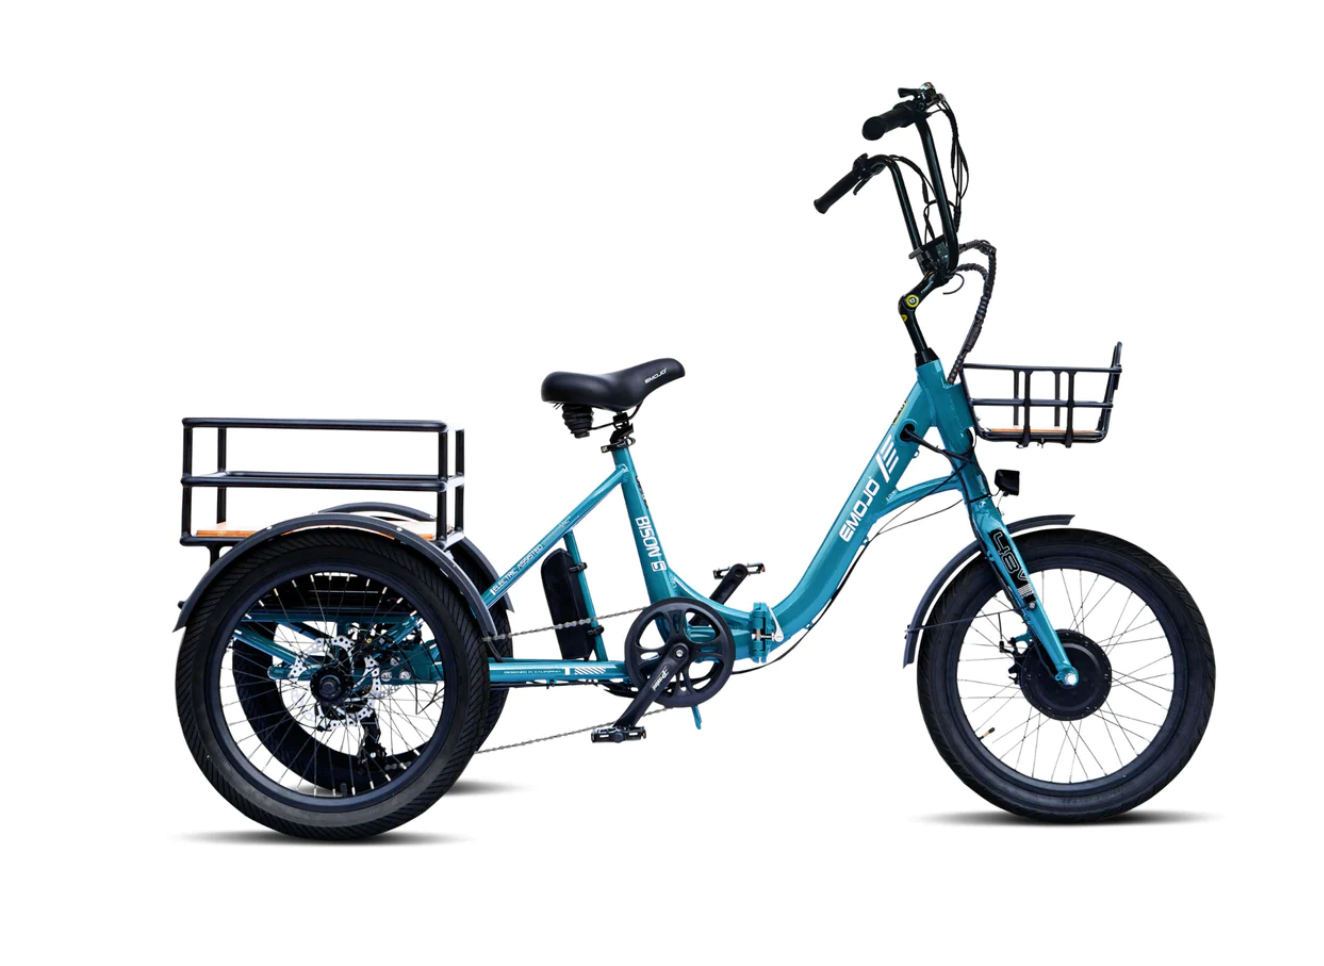 Emojo Bison S Folding Electric Trike Bike VALENTINES BONUS